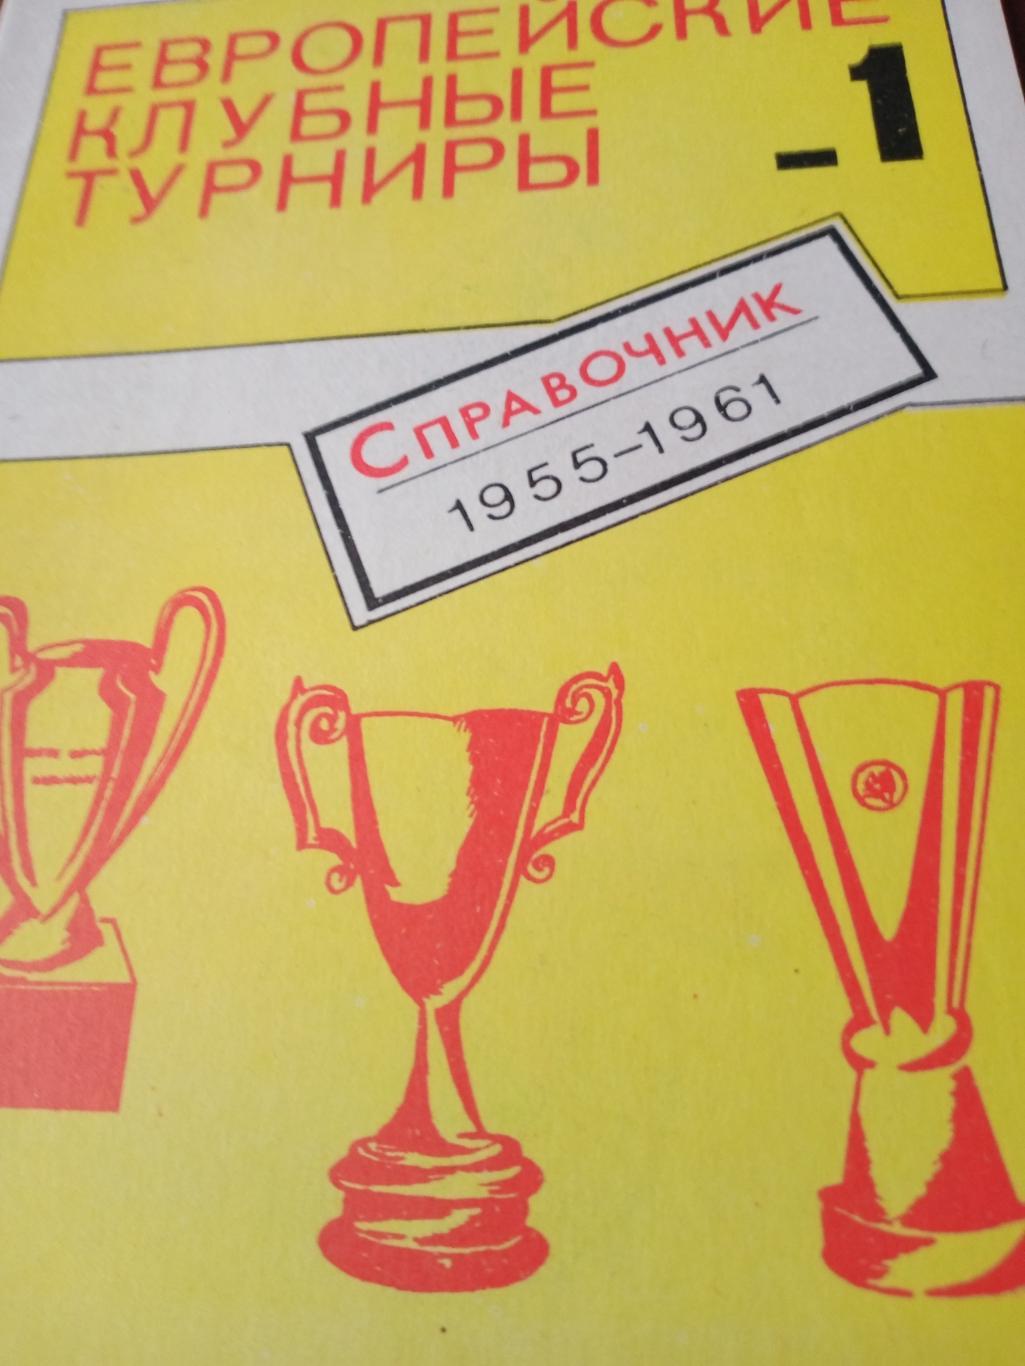 Европейские клубные турниры, 1955 - 1961. Издано в Москве, 1990 год